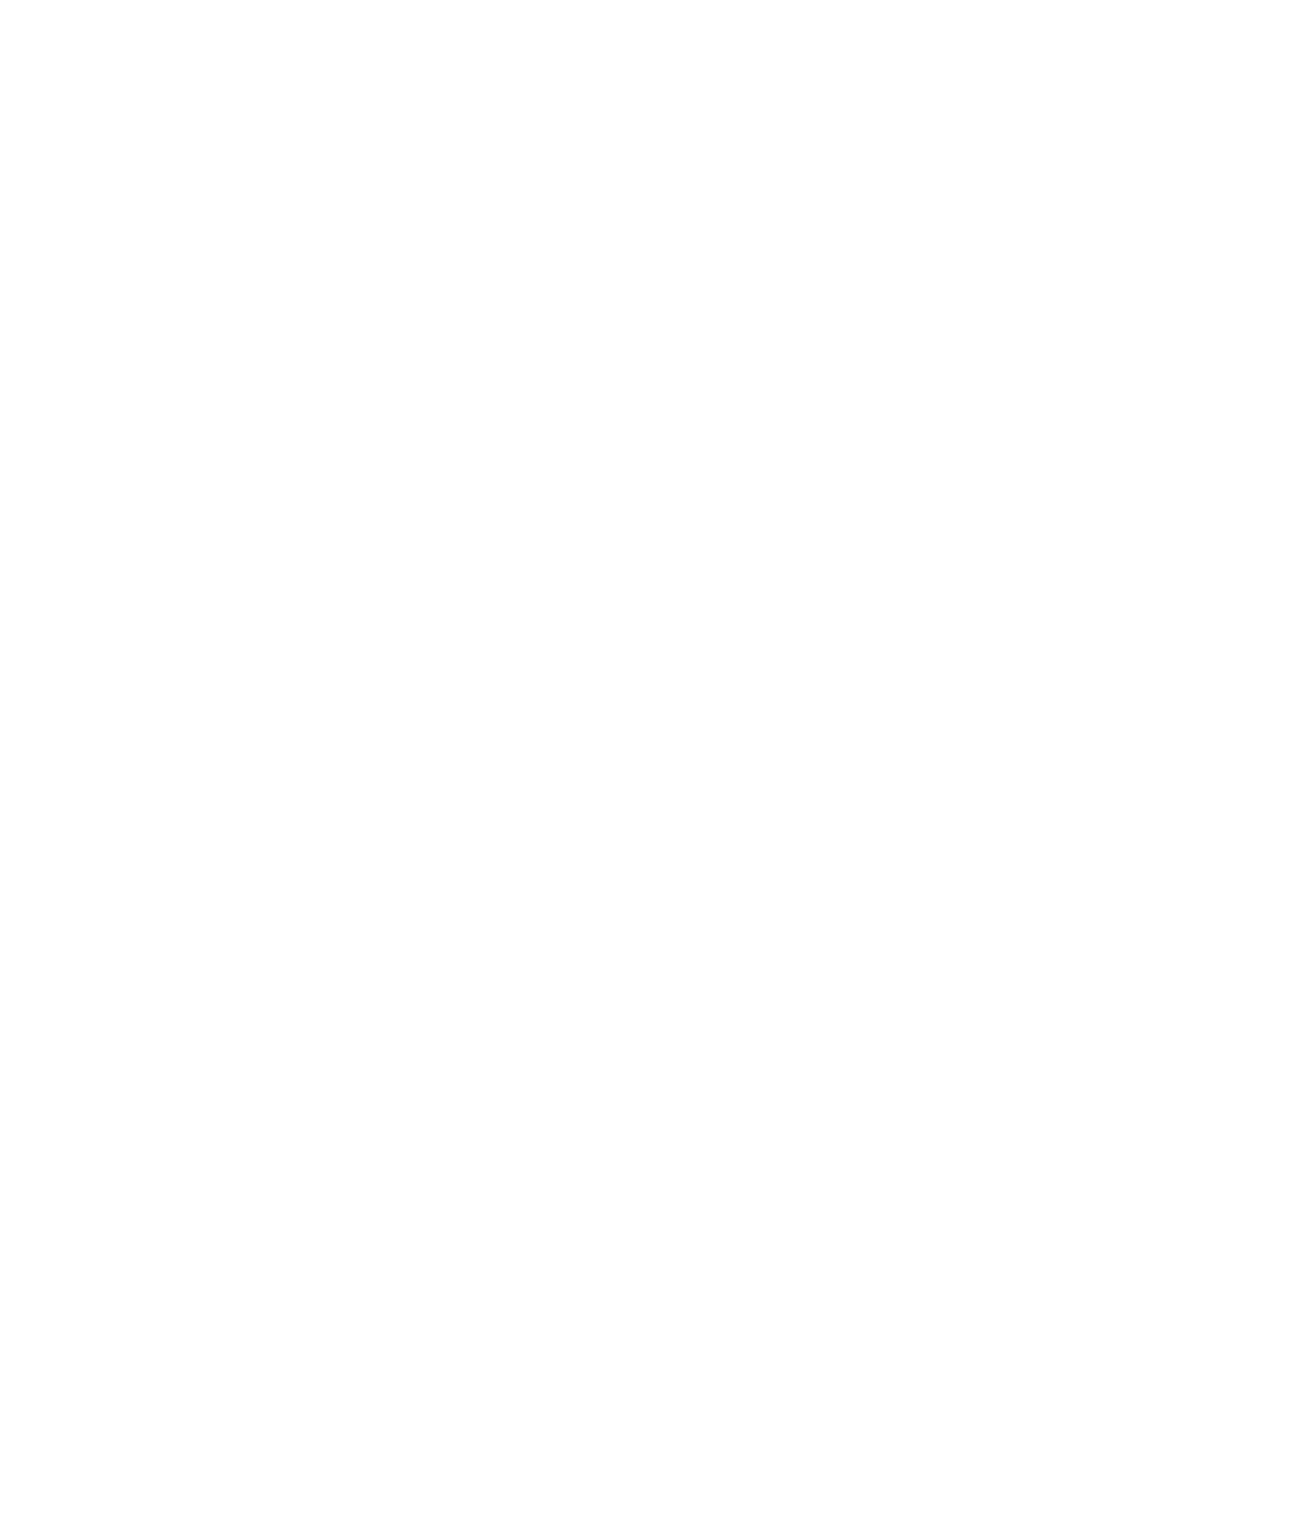 Photronics logo large for dark backgrounds (transparent PNG)